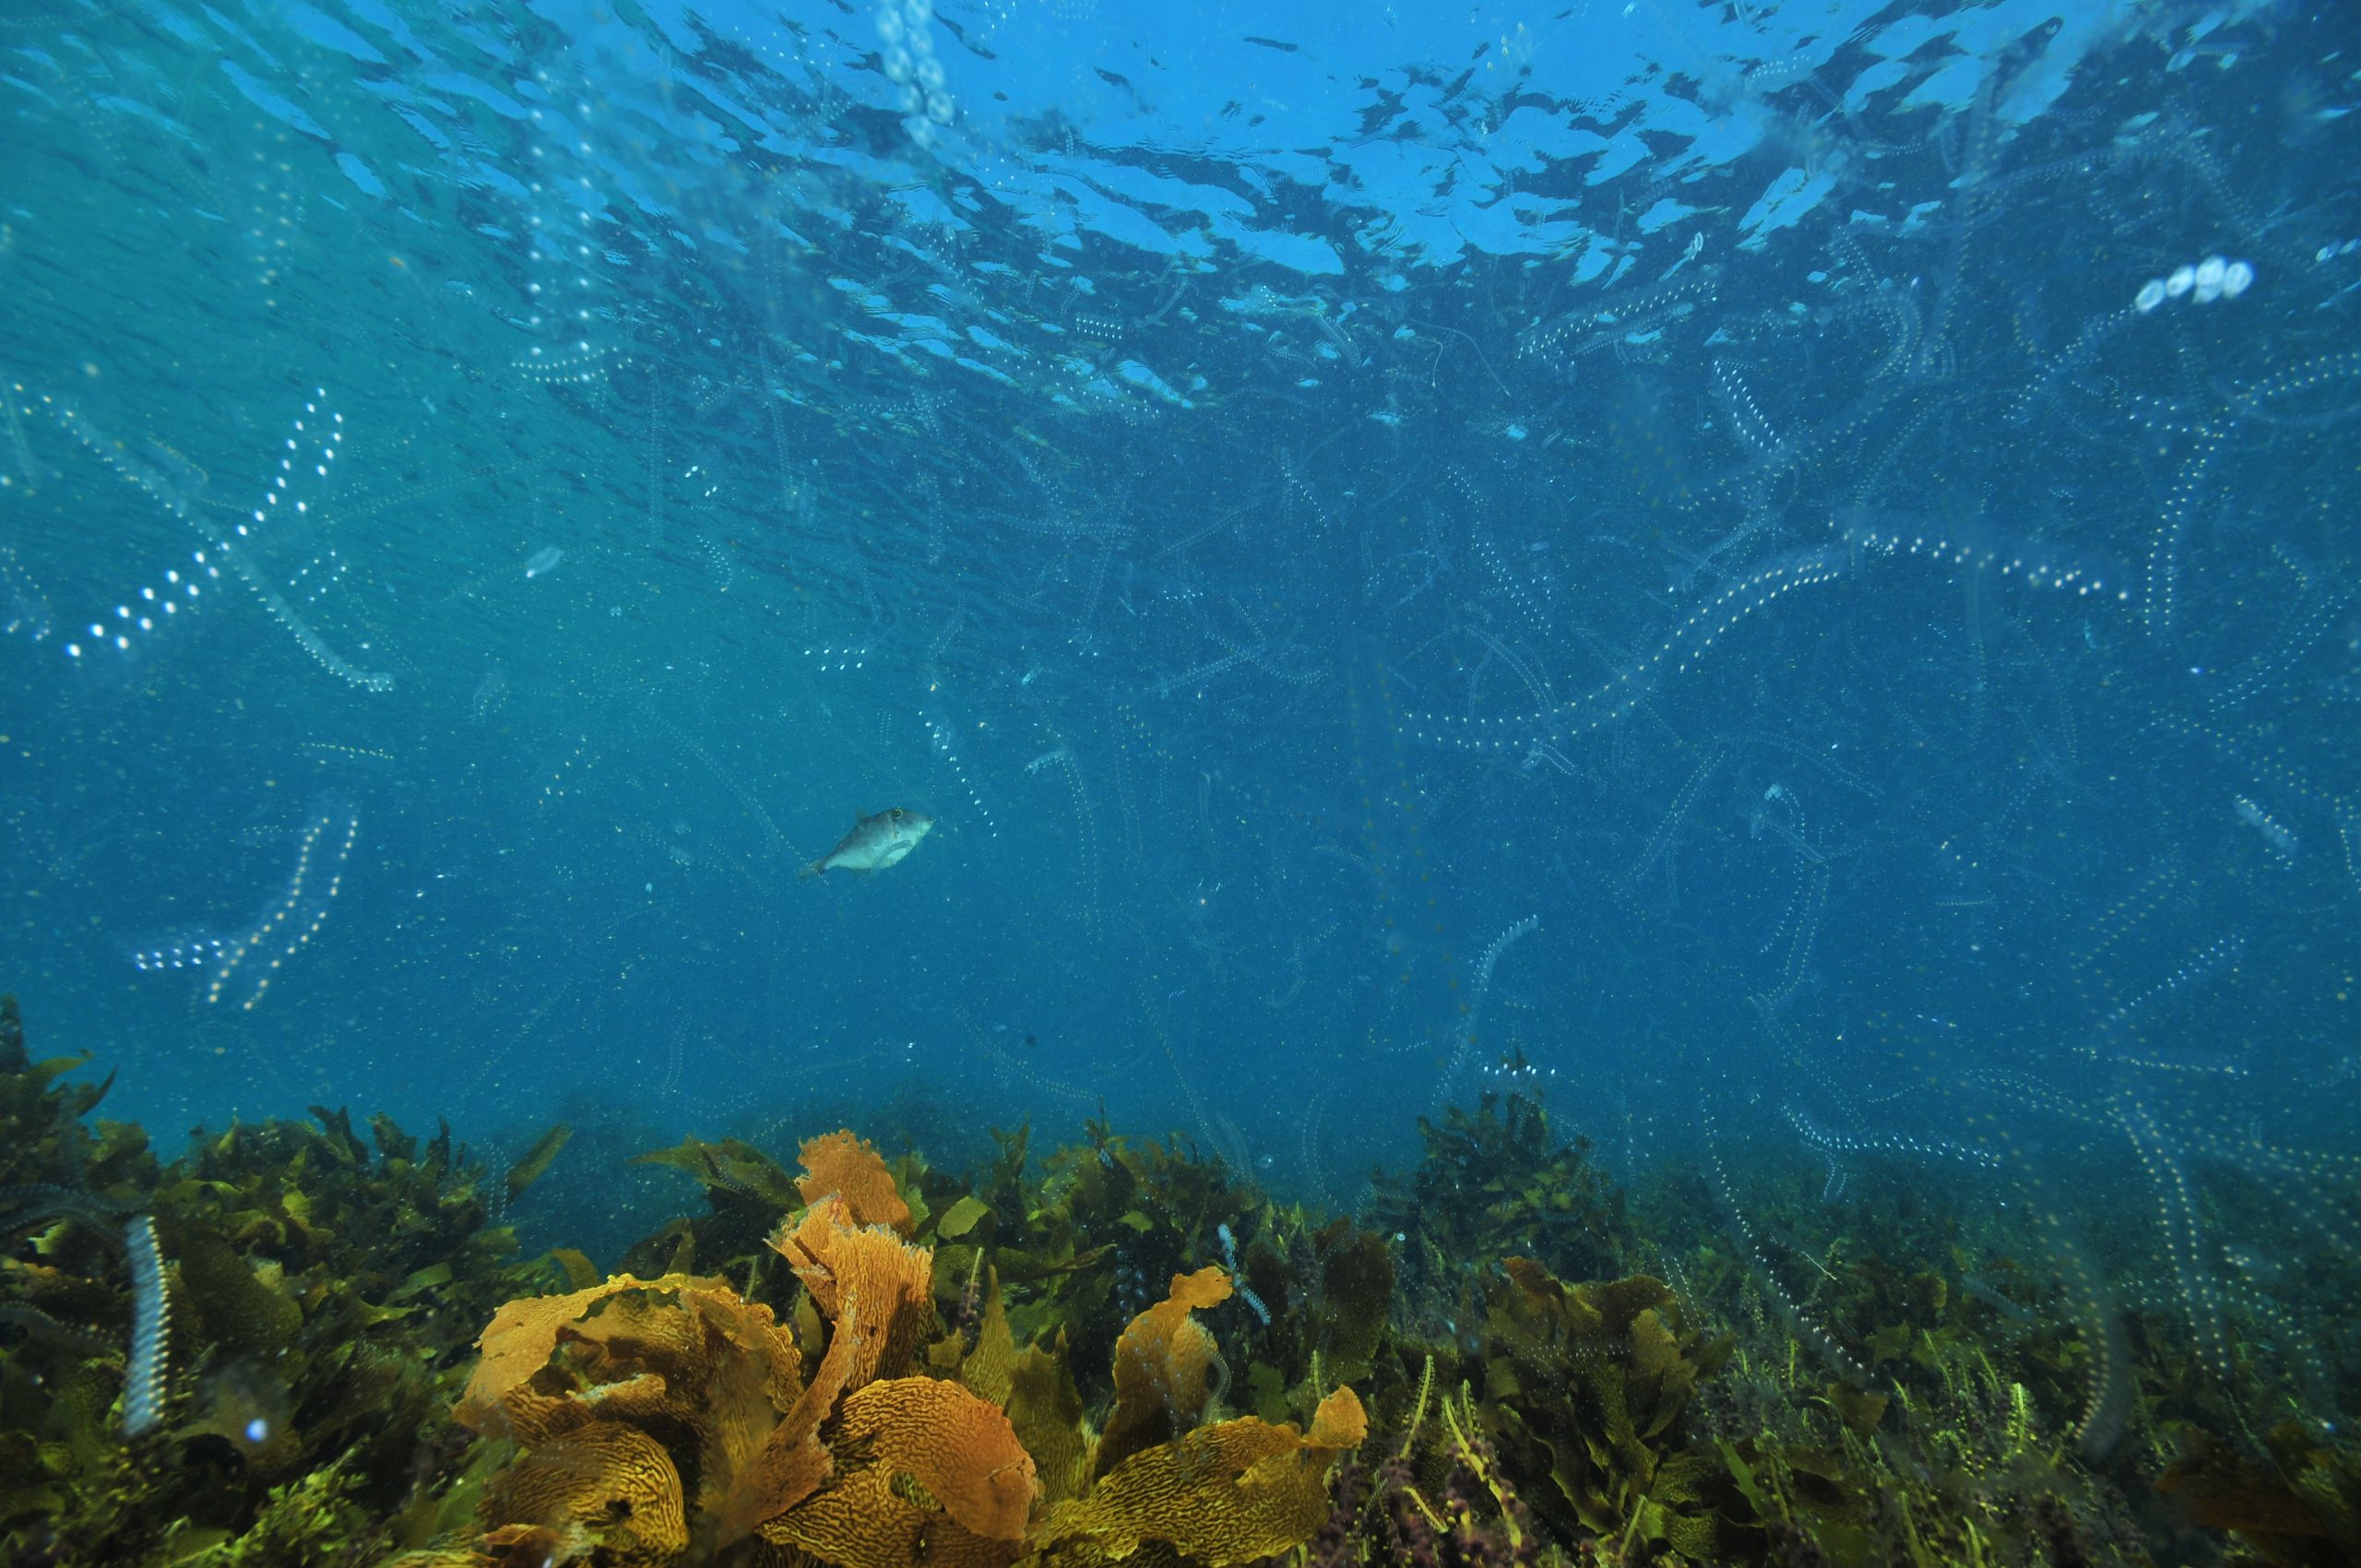 <p>提高浮游生物丰度和种植海带林是海洋二氧化碳清除的两种方法，但关于它们是否可行以及推广它们应遵循何种行为准则仍存在疑问。图片来源：Daniel Poloha / Alamy</p>